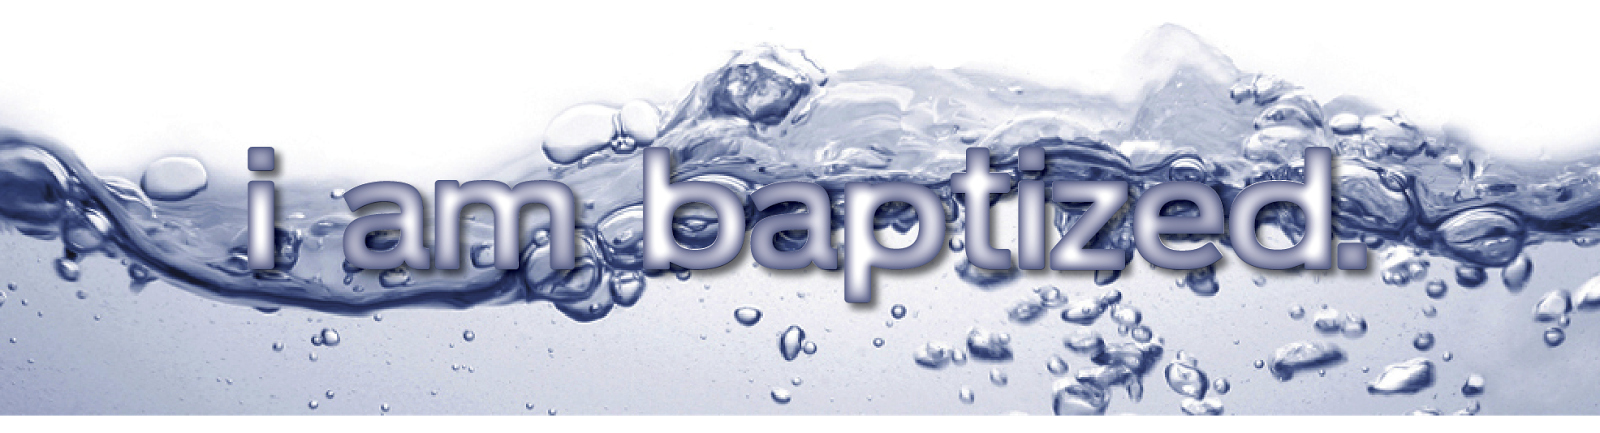 I WAS BAPTIZED